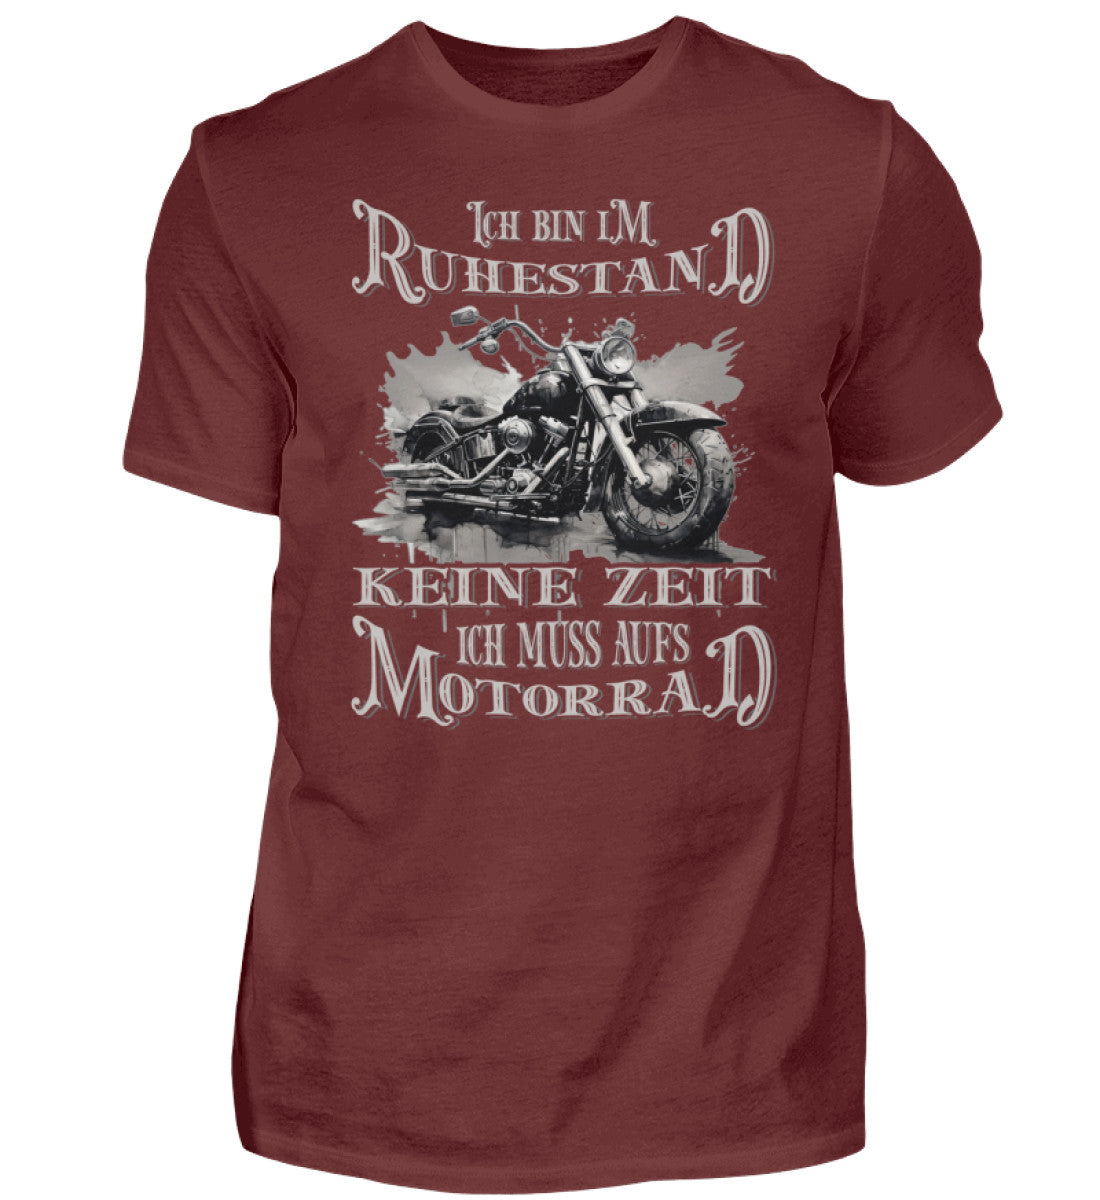 Ein Biker T-Shirt für Motorradfahrer von Wingbikers mit dem Aufdruck, Ich bin im Ruhestand - Keine Zeit - Ich muss aufs Motorrad, in weinrot.